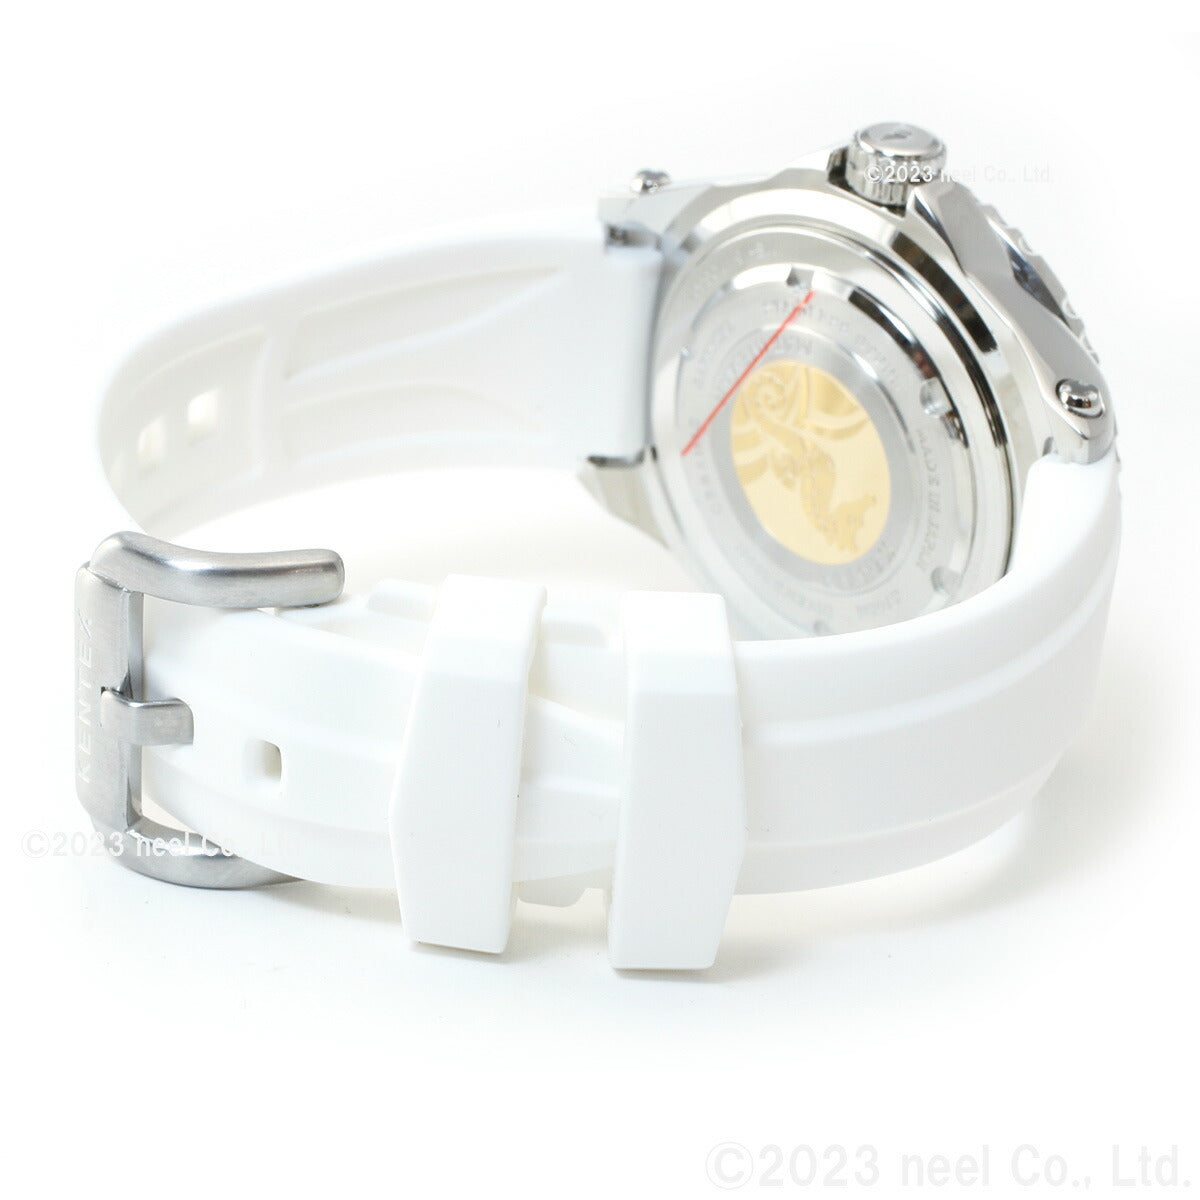 【5月から値上げ！】ケンテックス KENTEX 限定モデル 腕時計 時計 メンズ マリンマン シーホースII 日本製 S706M-15